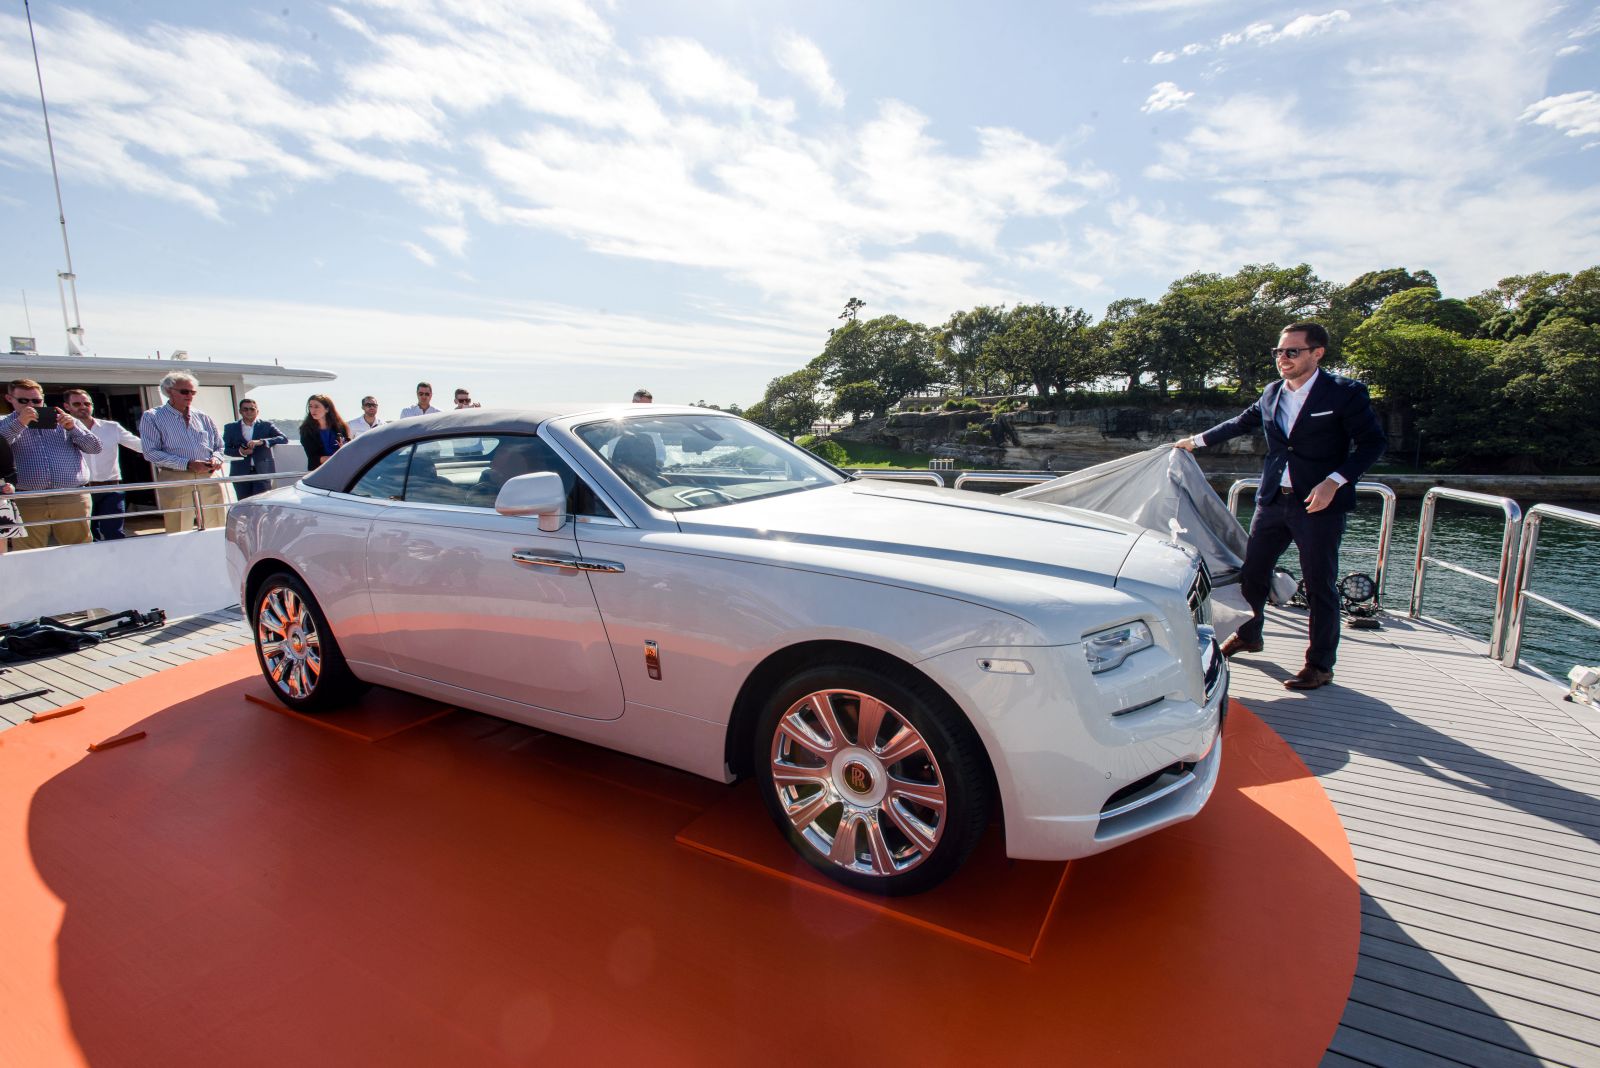 Rolls-Royce Motor công bố phát triển công nghệ mới cho tương lai